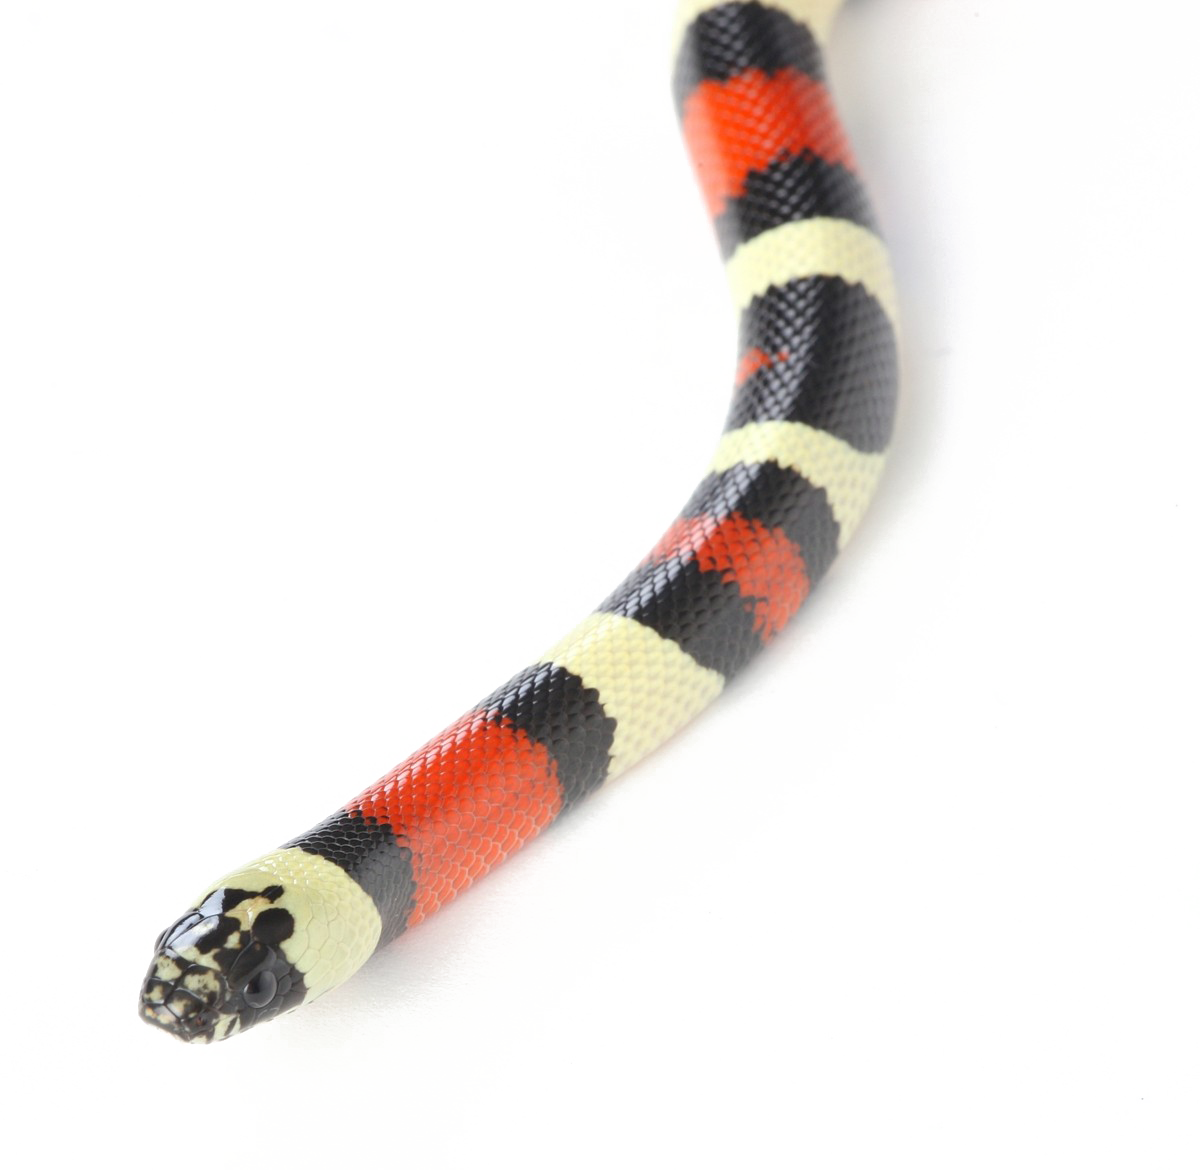 Змея PNG Прозрачное изображение